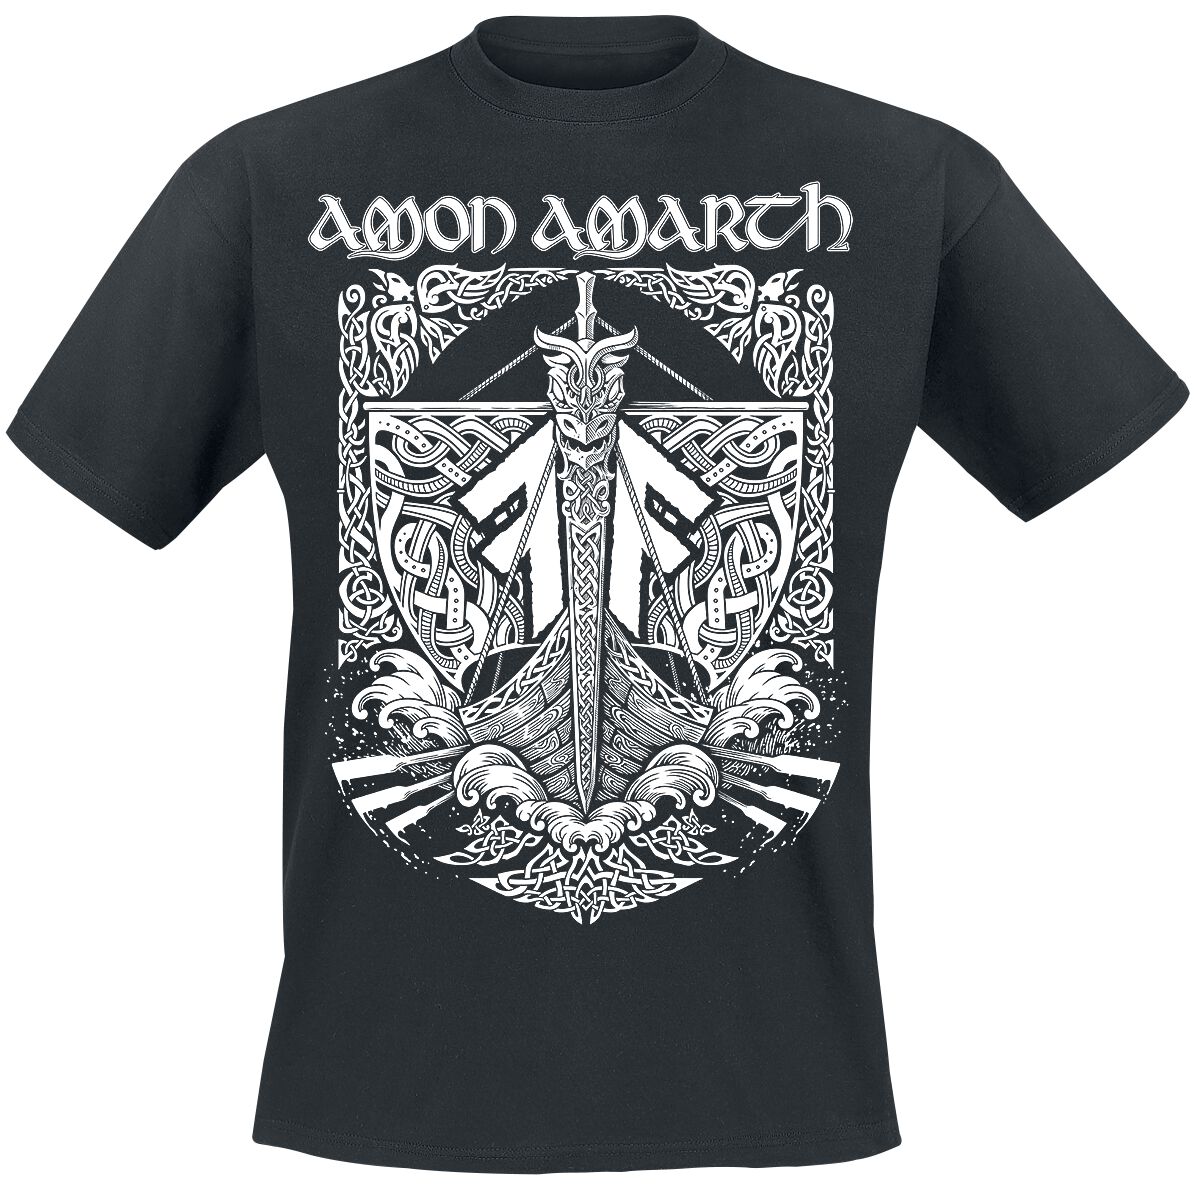 Amon Amarth T-Shirt - Put your back into the oar - S bis 3XL - für Männer - Größe M - schwarz  - Lizenziertes Merchandise!